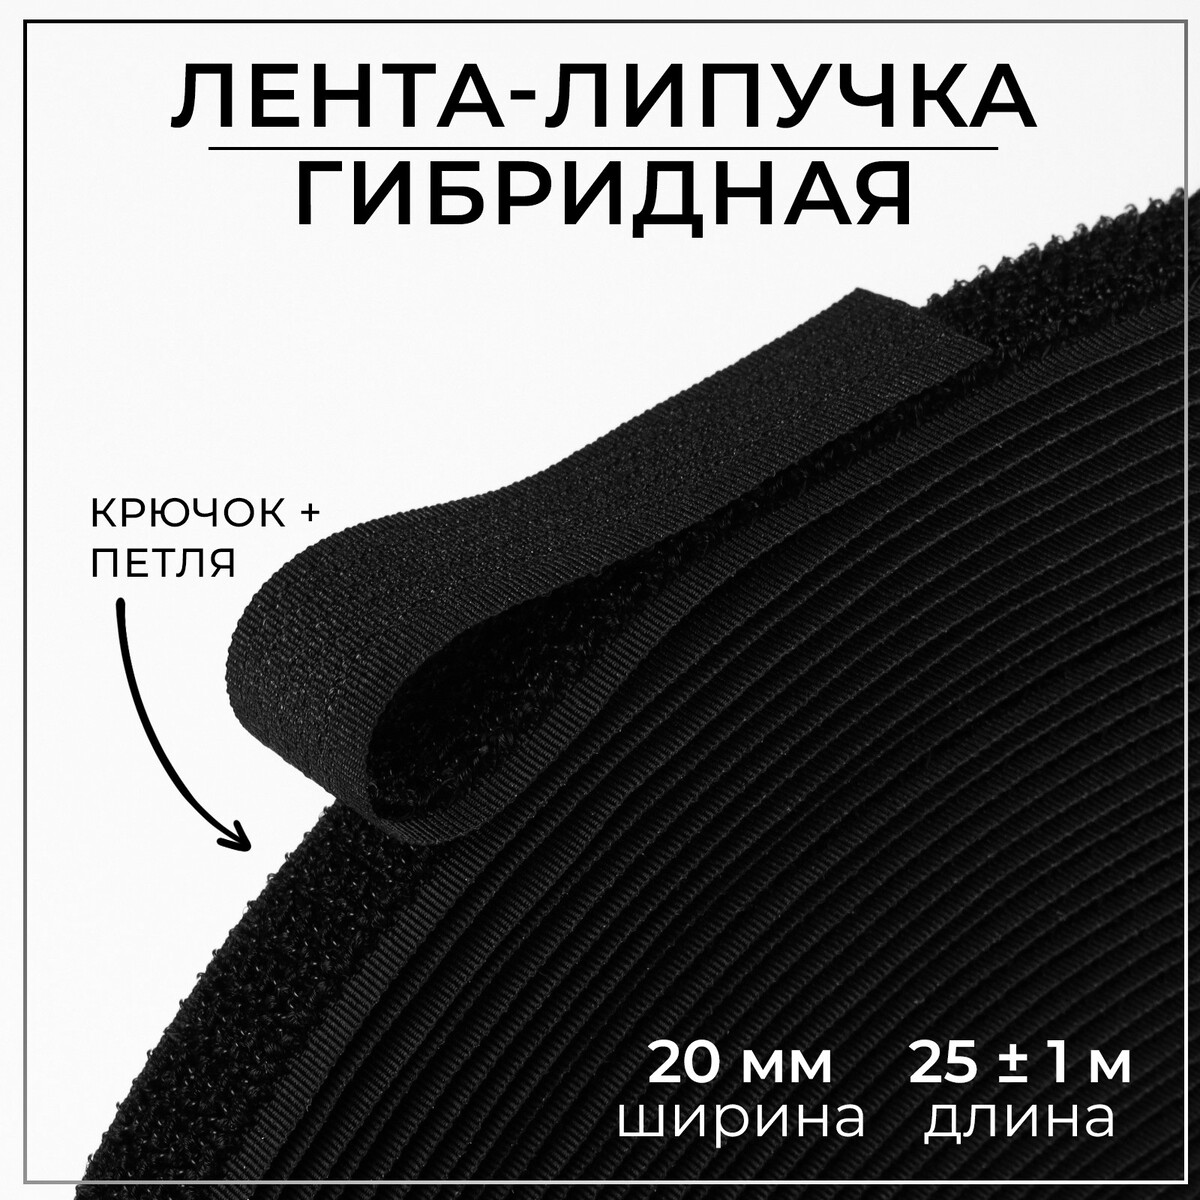 Липучка гибридная, 20 мм × 25 ± 1 м, цвет черный липучка 50 мм × 25 ± 1 м